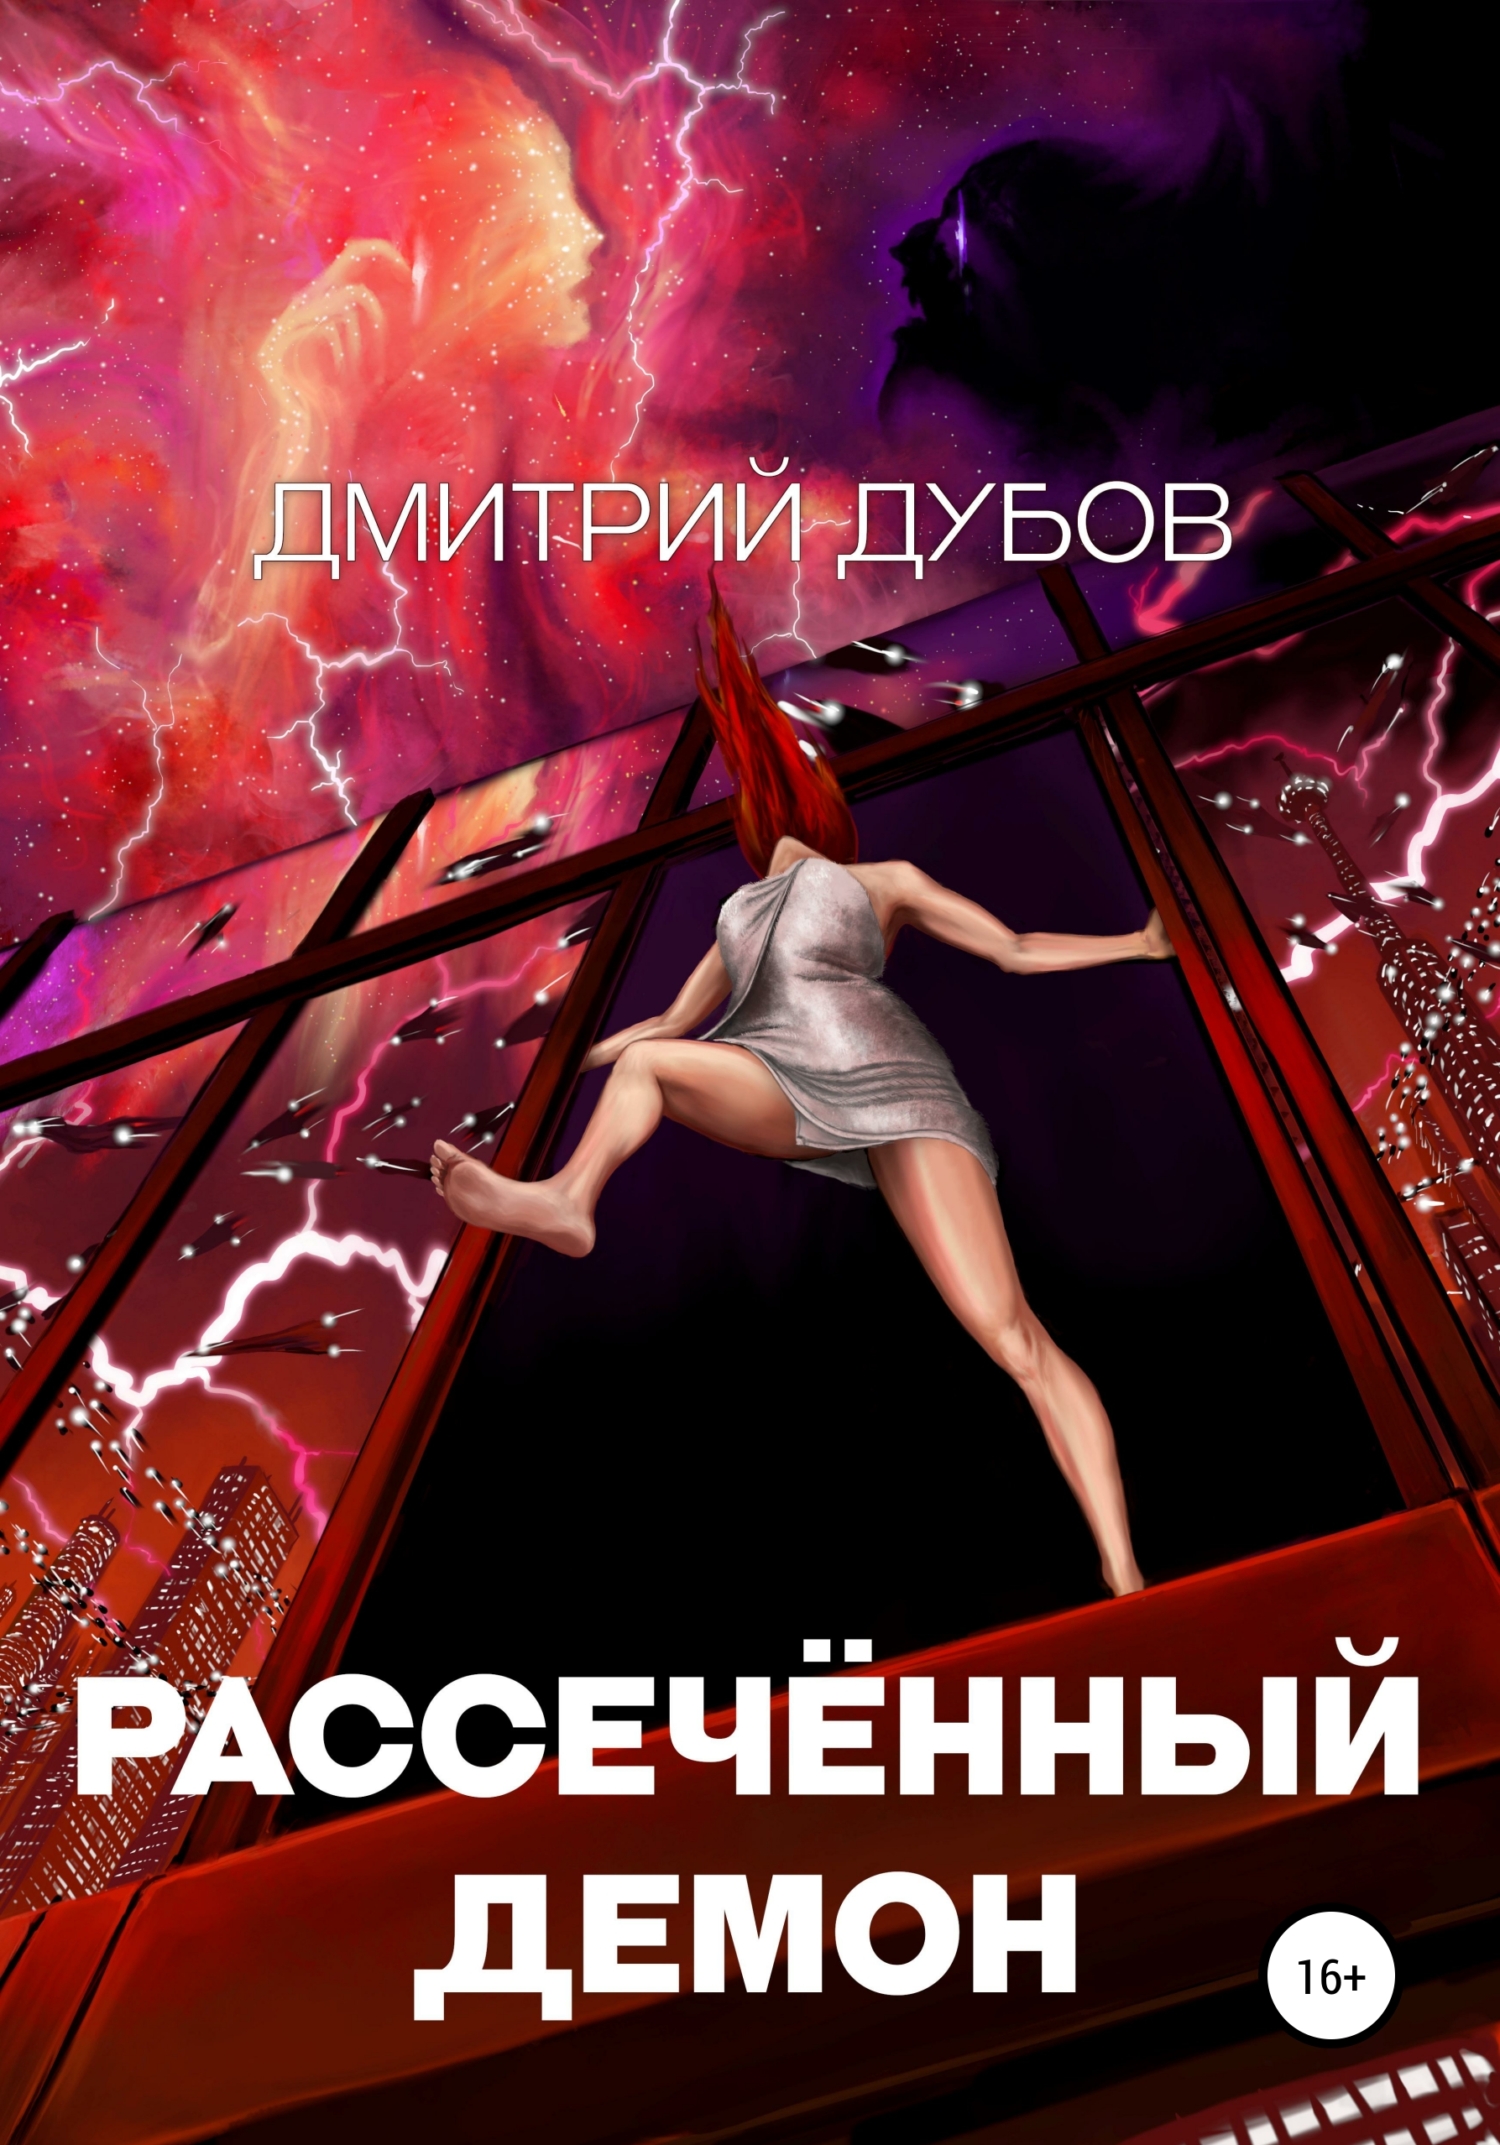 Дмитрий Дубов. Рассечённый демон. Предания Электры 3